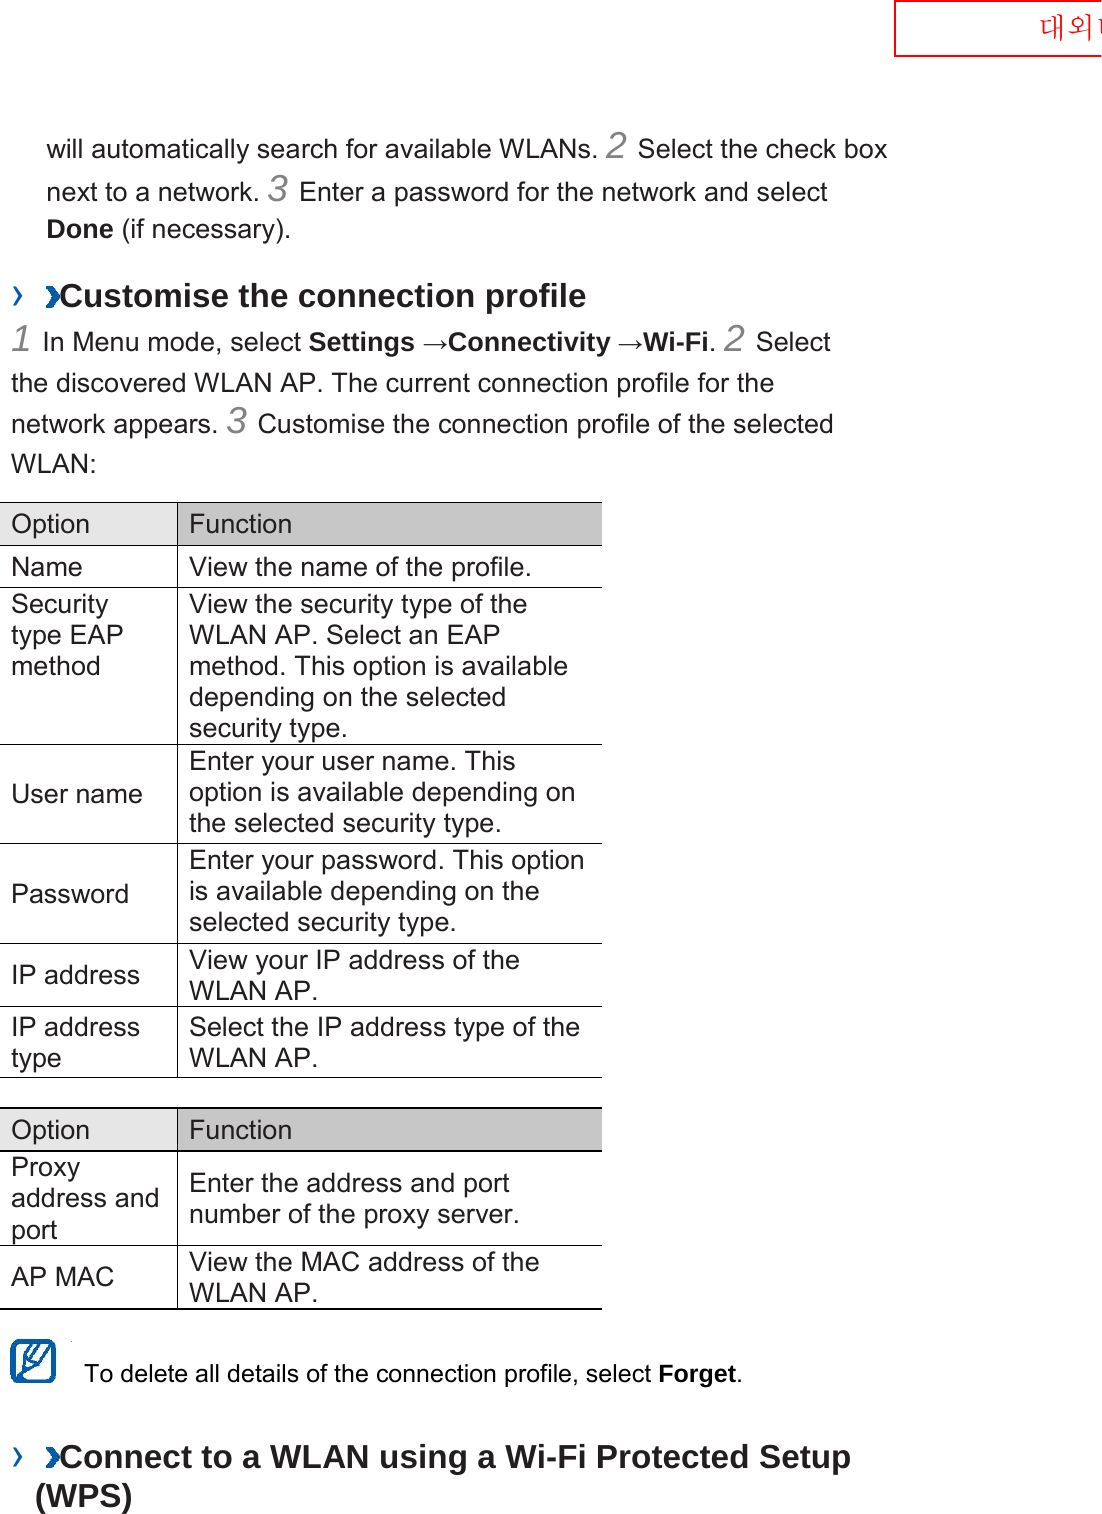  대외비 will automatically search for available WLANs. 2 Select the check box next to a network. 3 Enter a password for the network and select Done (if necessary).   ›  Customise the connection profile   1 In Menu mode, select Settings →Connectivity →Wi-Fi. 2 Select the discovered WLAN AP. The current connection profile for the network appears. 3 Customise the connection profile of the selected WLAN:   Option    Function   Name   View the name of the profile.   Security type EAP method   View the security type of the WLAN AP. Select an EAP method. This option is available depending on the selected security type.   User name   Enter your user name. This option is available depending on the selected security type.   Password   Enter your password. This option is available depending on the selected security type.   IP address   View your IP address of the WLAN AP.   IP address type   Select the IP address type of the WLAN AP.    Option    Function   Proxy address and port   Enter the address and port number of the proxy server.   AP MAC   View the MAC address of the WLAN AP.     To delete all details of the connection profile, select Forget.   ›  Connect to a WLAN using a Wi-Fi Protected Setup (WPS)   